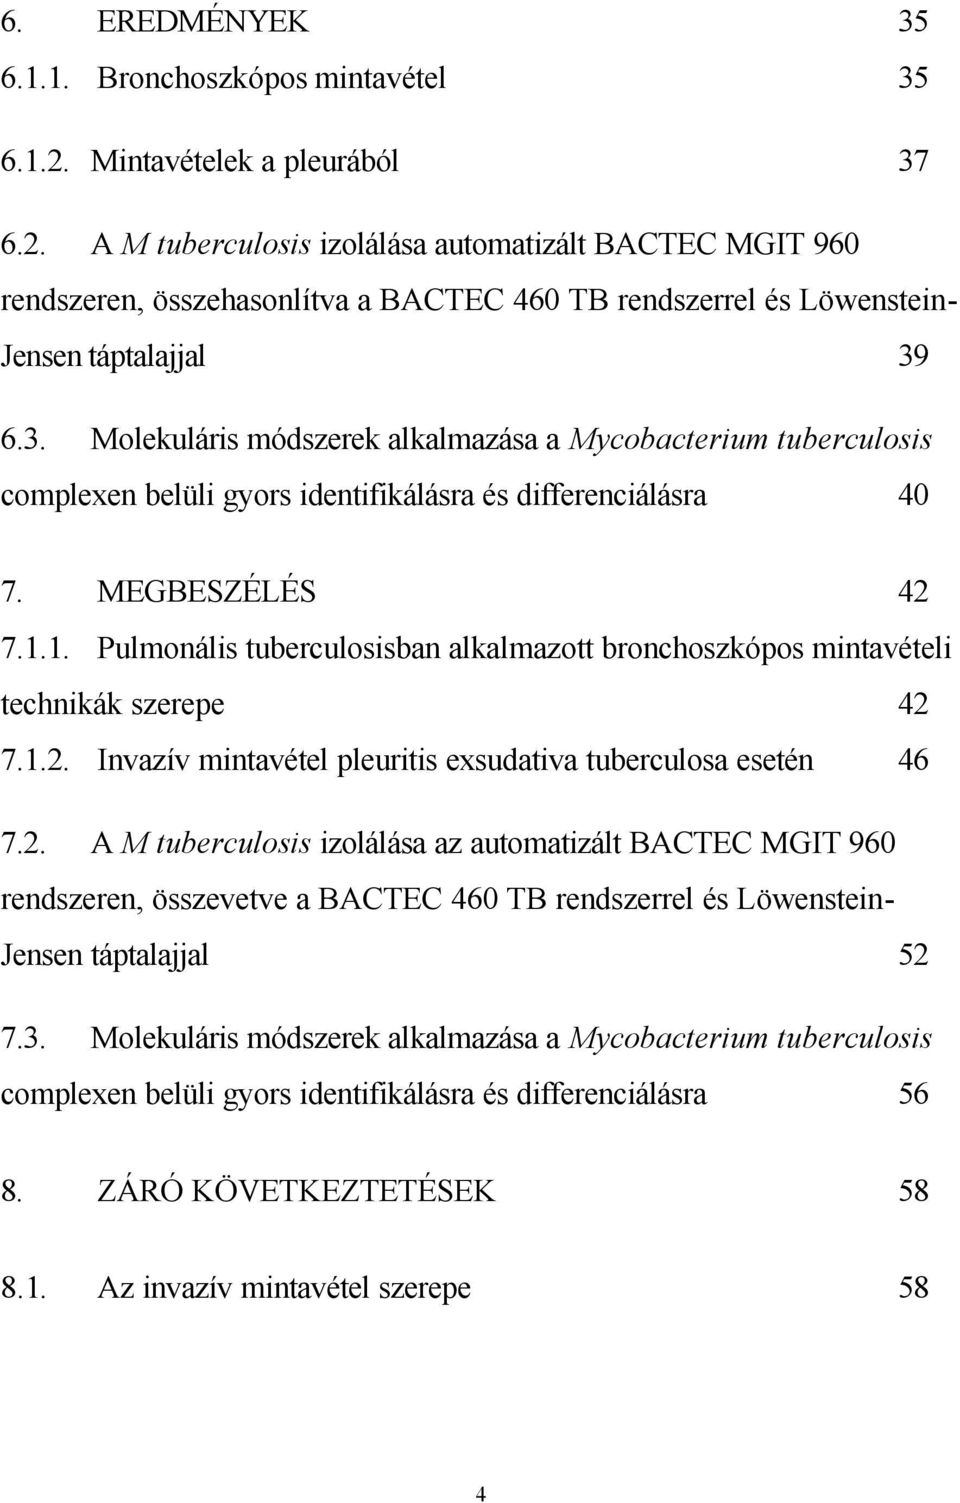 MEGBESZÉLÉS 42 7.1.1. Pulmonális tuberculosisban alkalmazott bronchoszkópos mintavételi technikák szerepe 42 7.1.2. Invazív mintavétel pleuritis exsudativa tuberculosa esetén 46 7.2. A M tuberculosis izolálása az automatizált BACTEC MGIT 960 rendszeren, összevetve a BACTEC 460 TB rendszerrel és Löwenstein- Jensen táptalajjal 52 7.